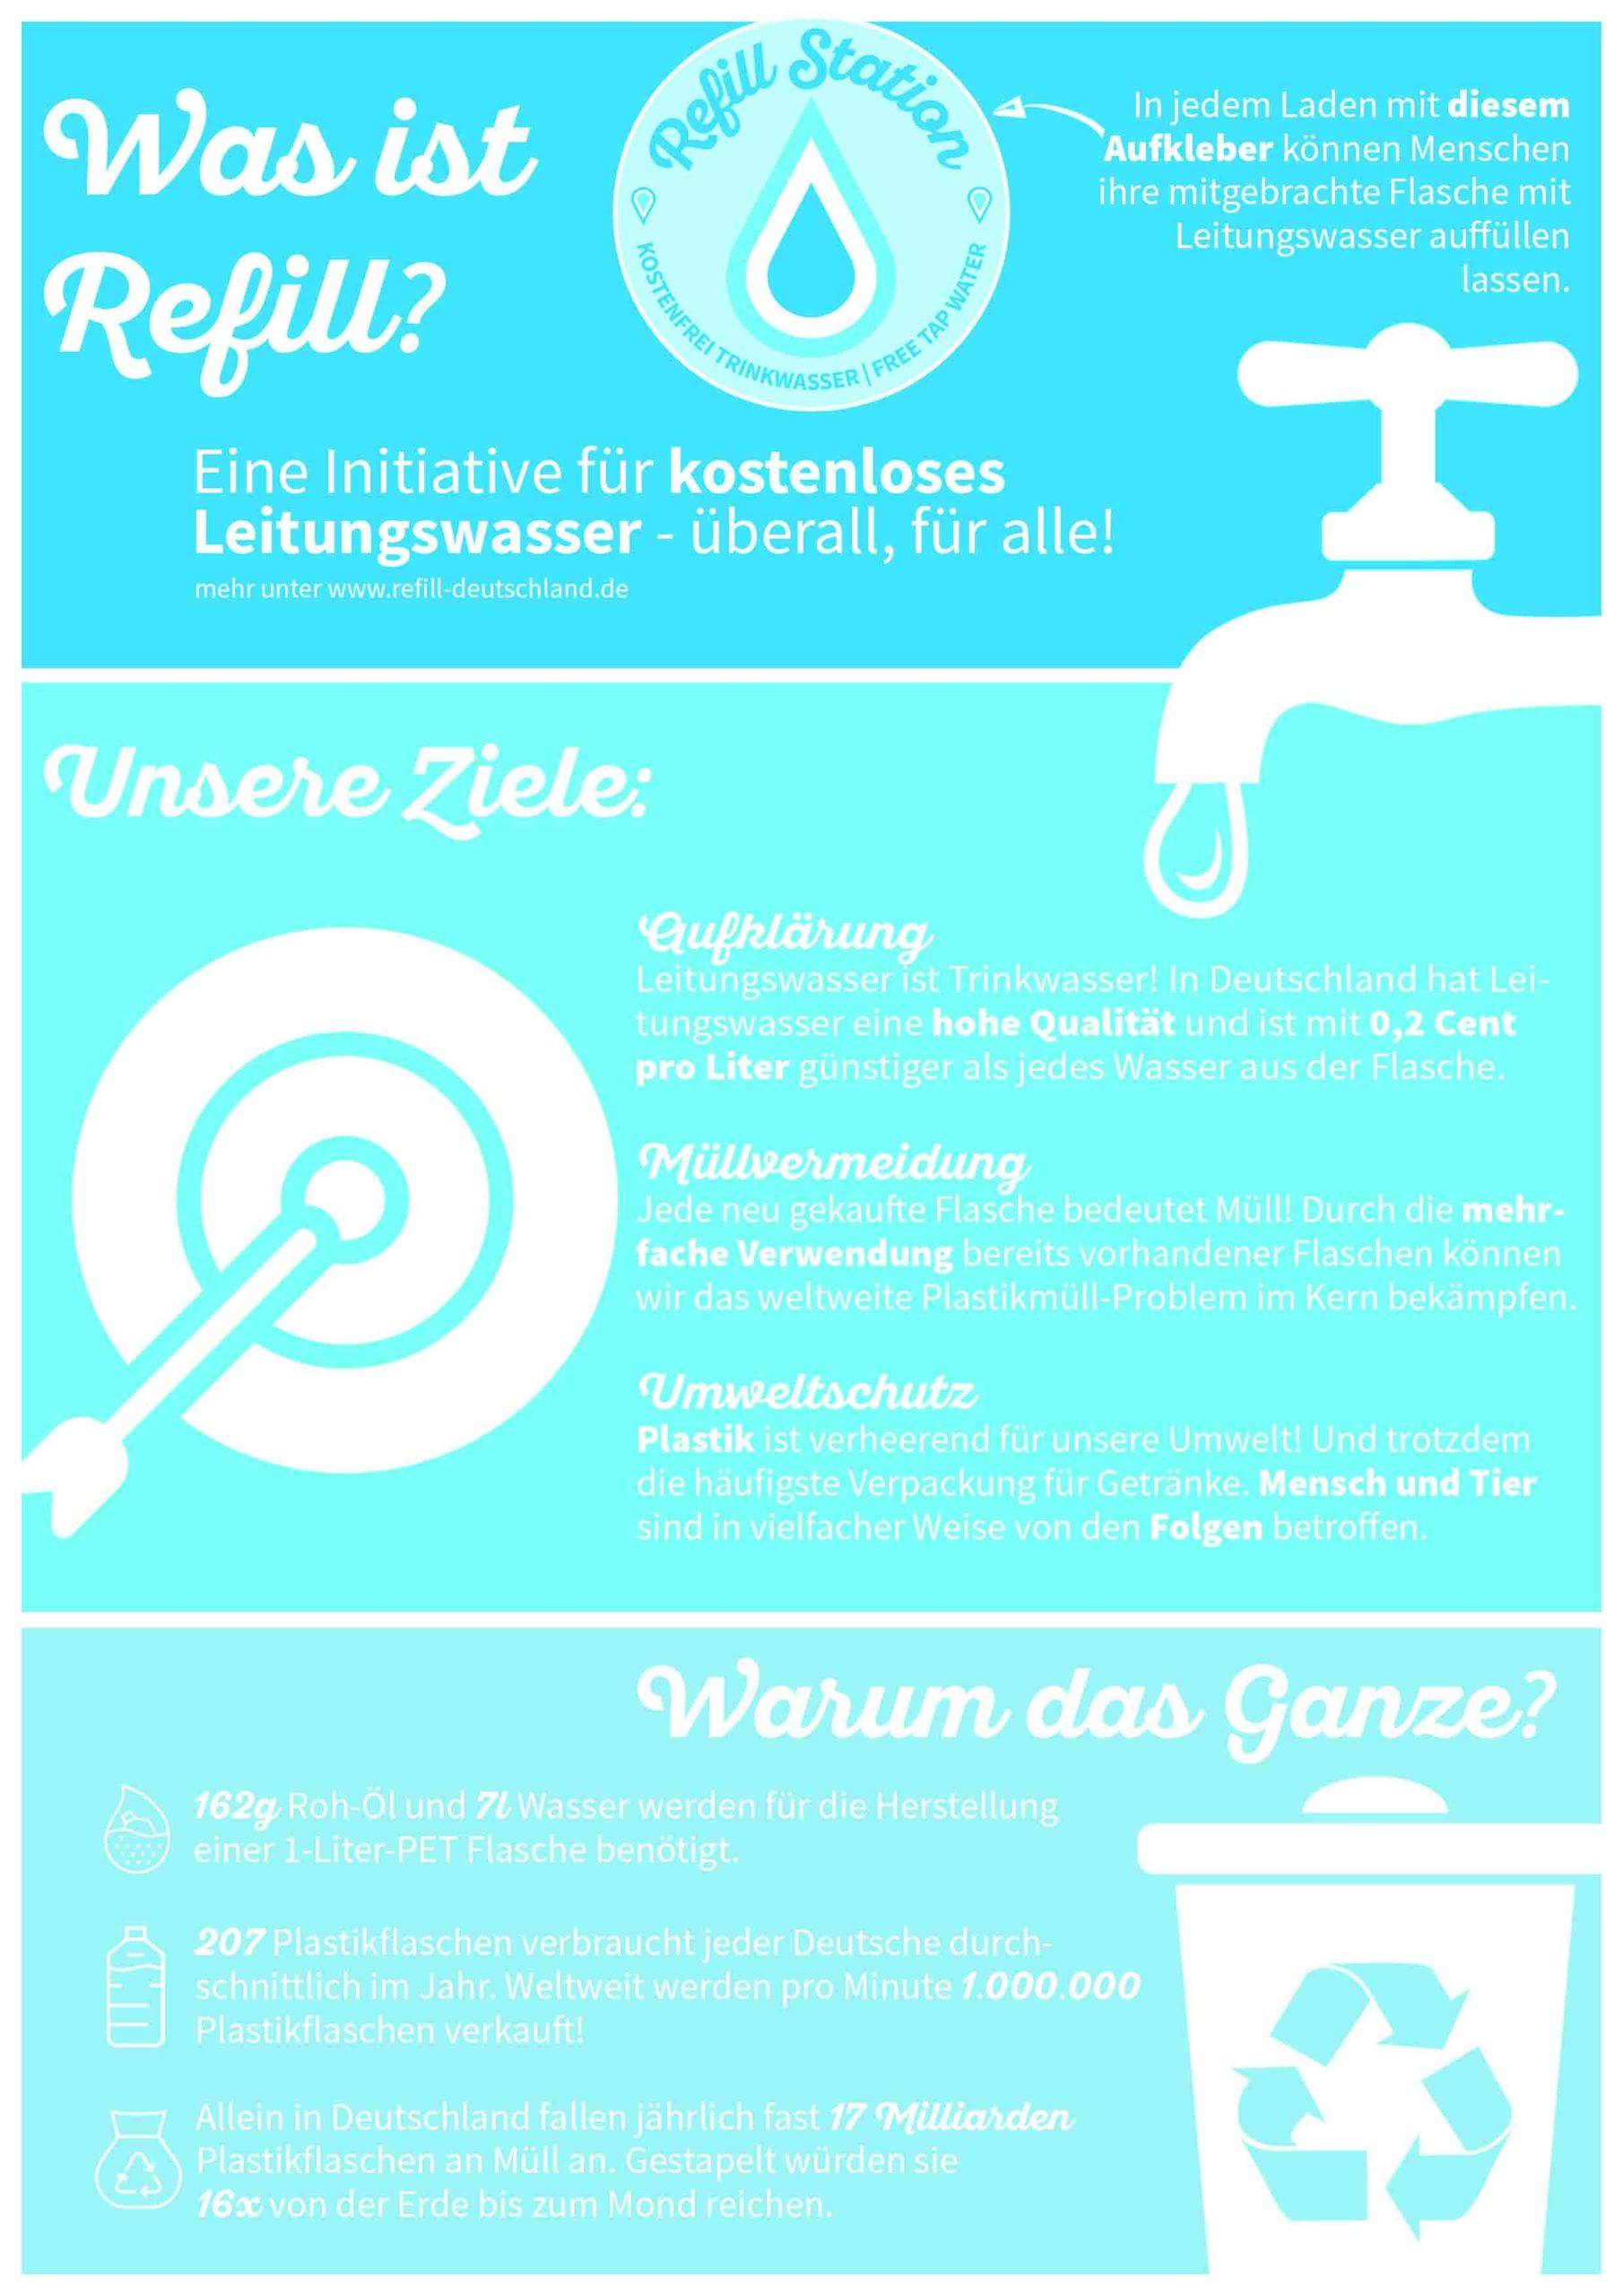 Refill Neukirchen-Vluyn - Grüne wollen Bürger*innen kostenlosen Zugang zu Leitungswasser verschaffen